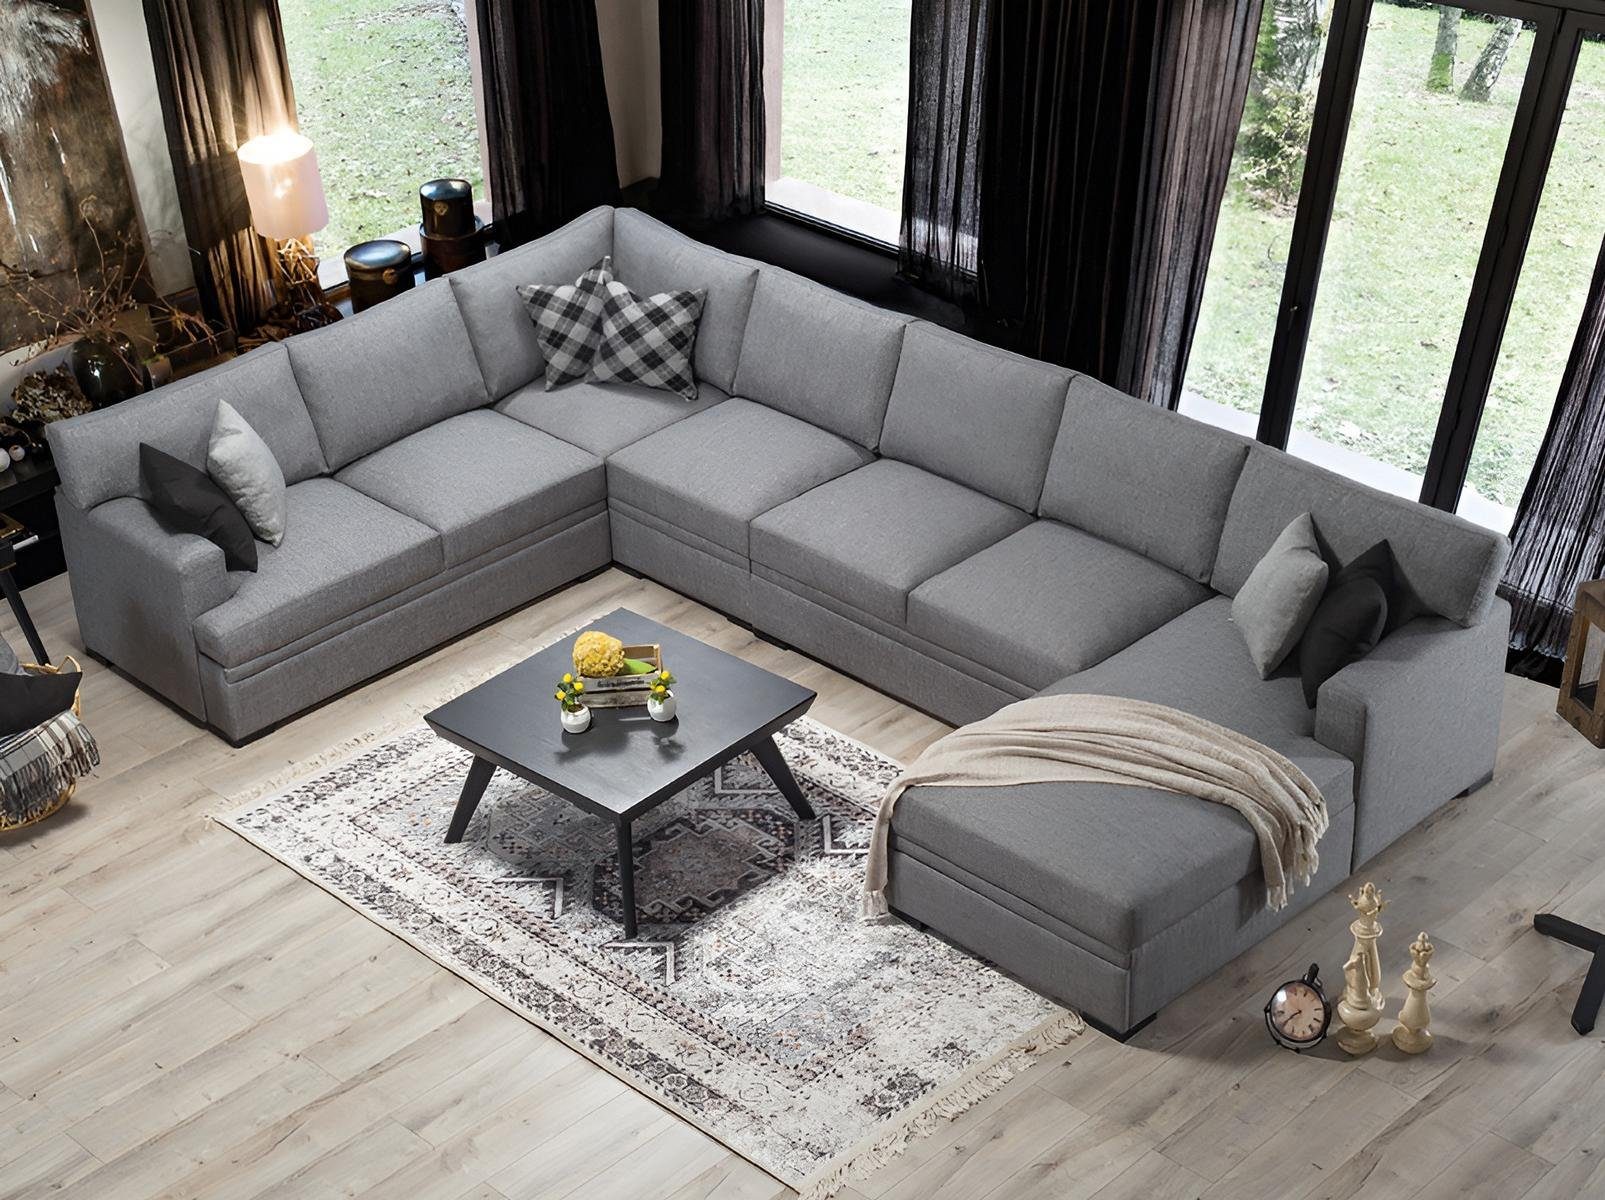 JVmoebel Ecksofa Sofa Modern Europa Grau U-Form Wohnzimmer Teile, Einrichtung Neu, in Made 1 Design Möbel